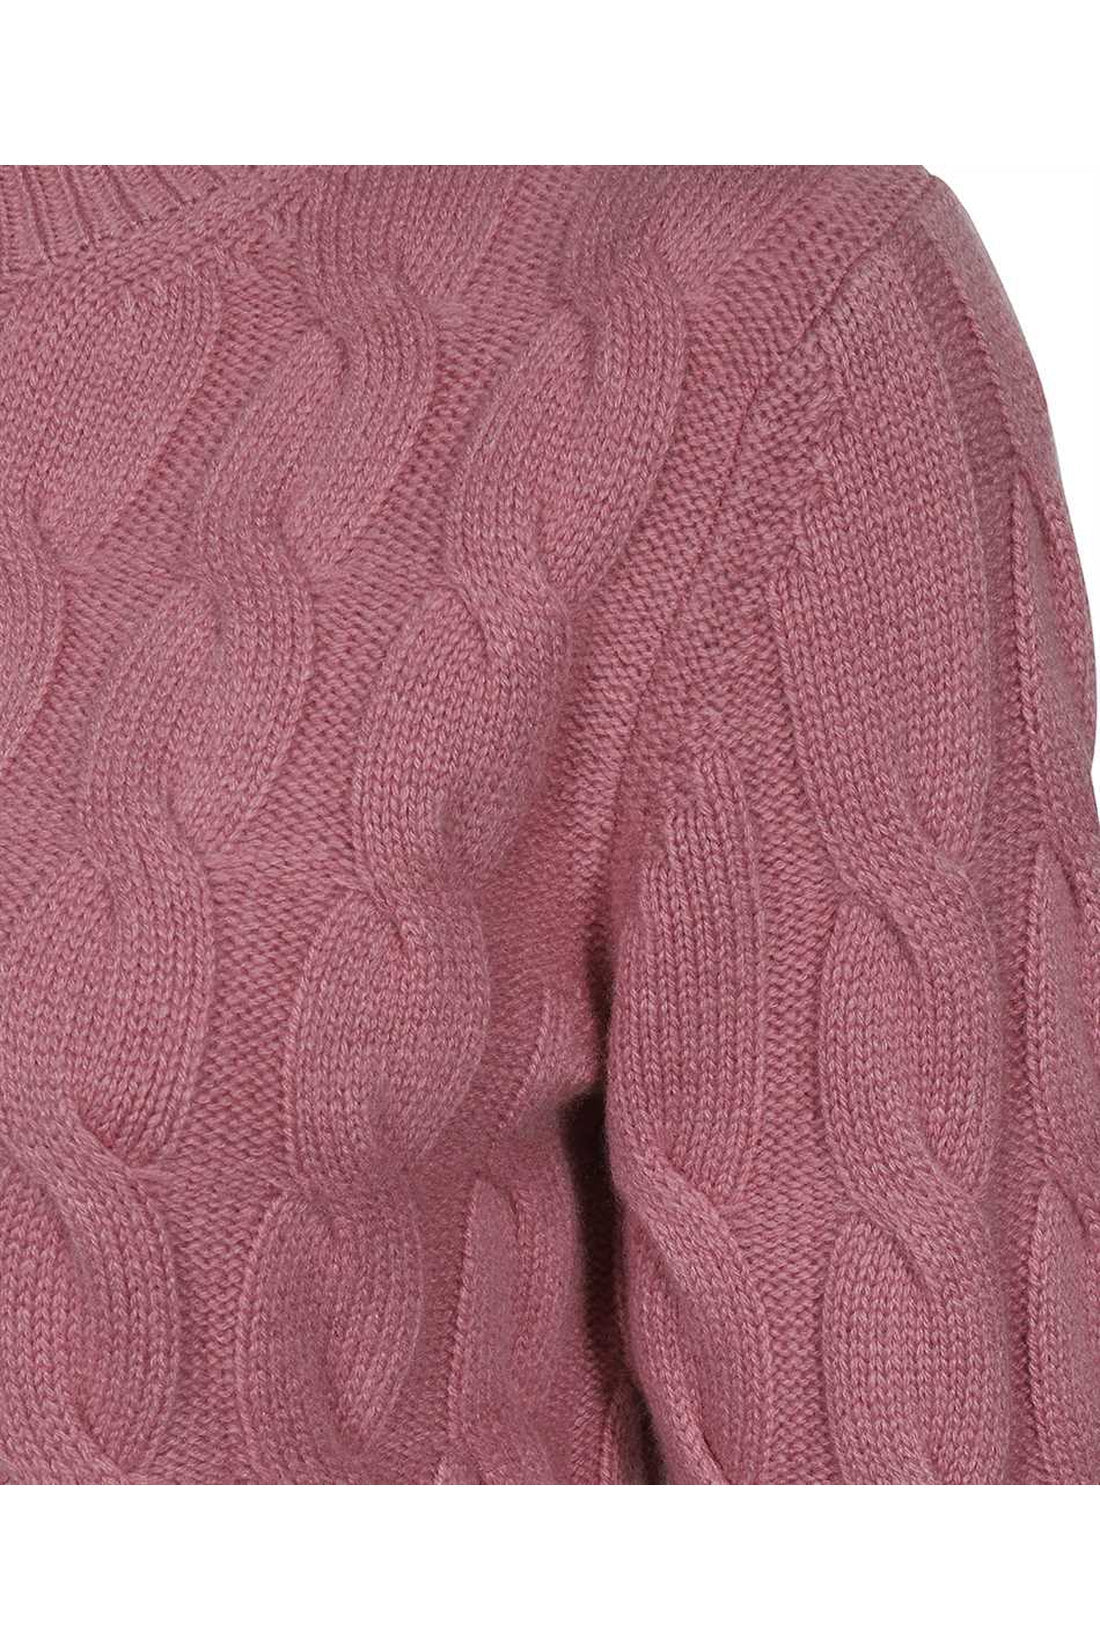 Max Mara-OUTLET-SALE-Edipo crew-neck cashmere sweater-ARCHIVIST